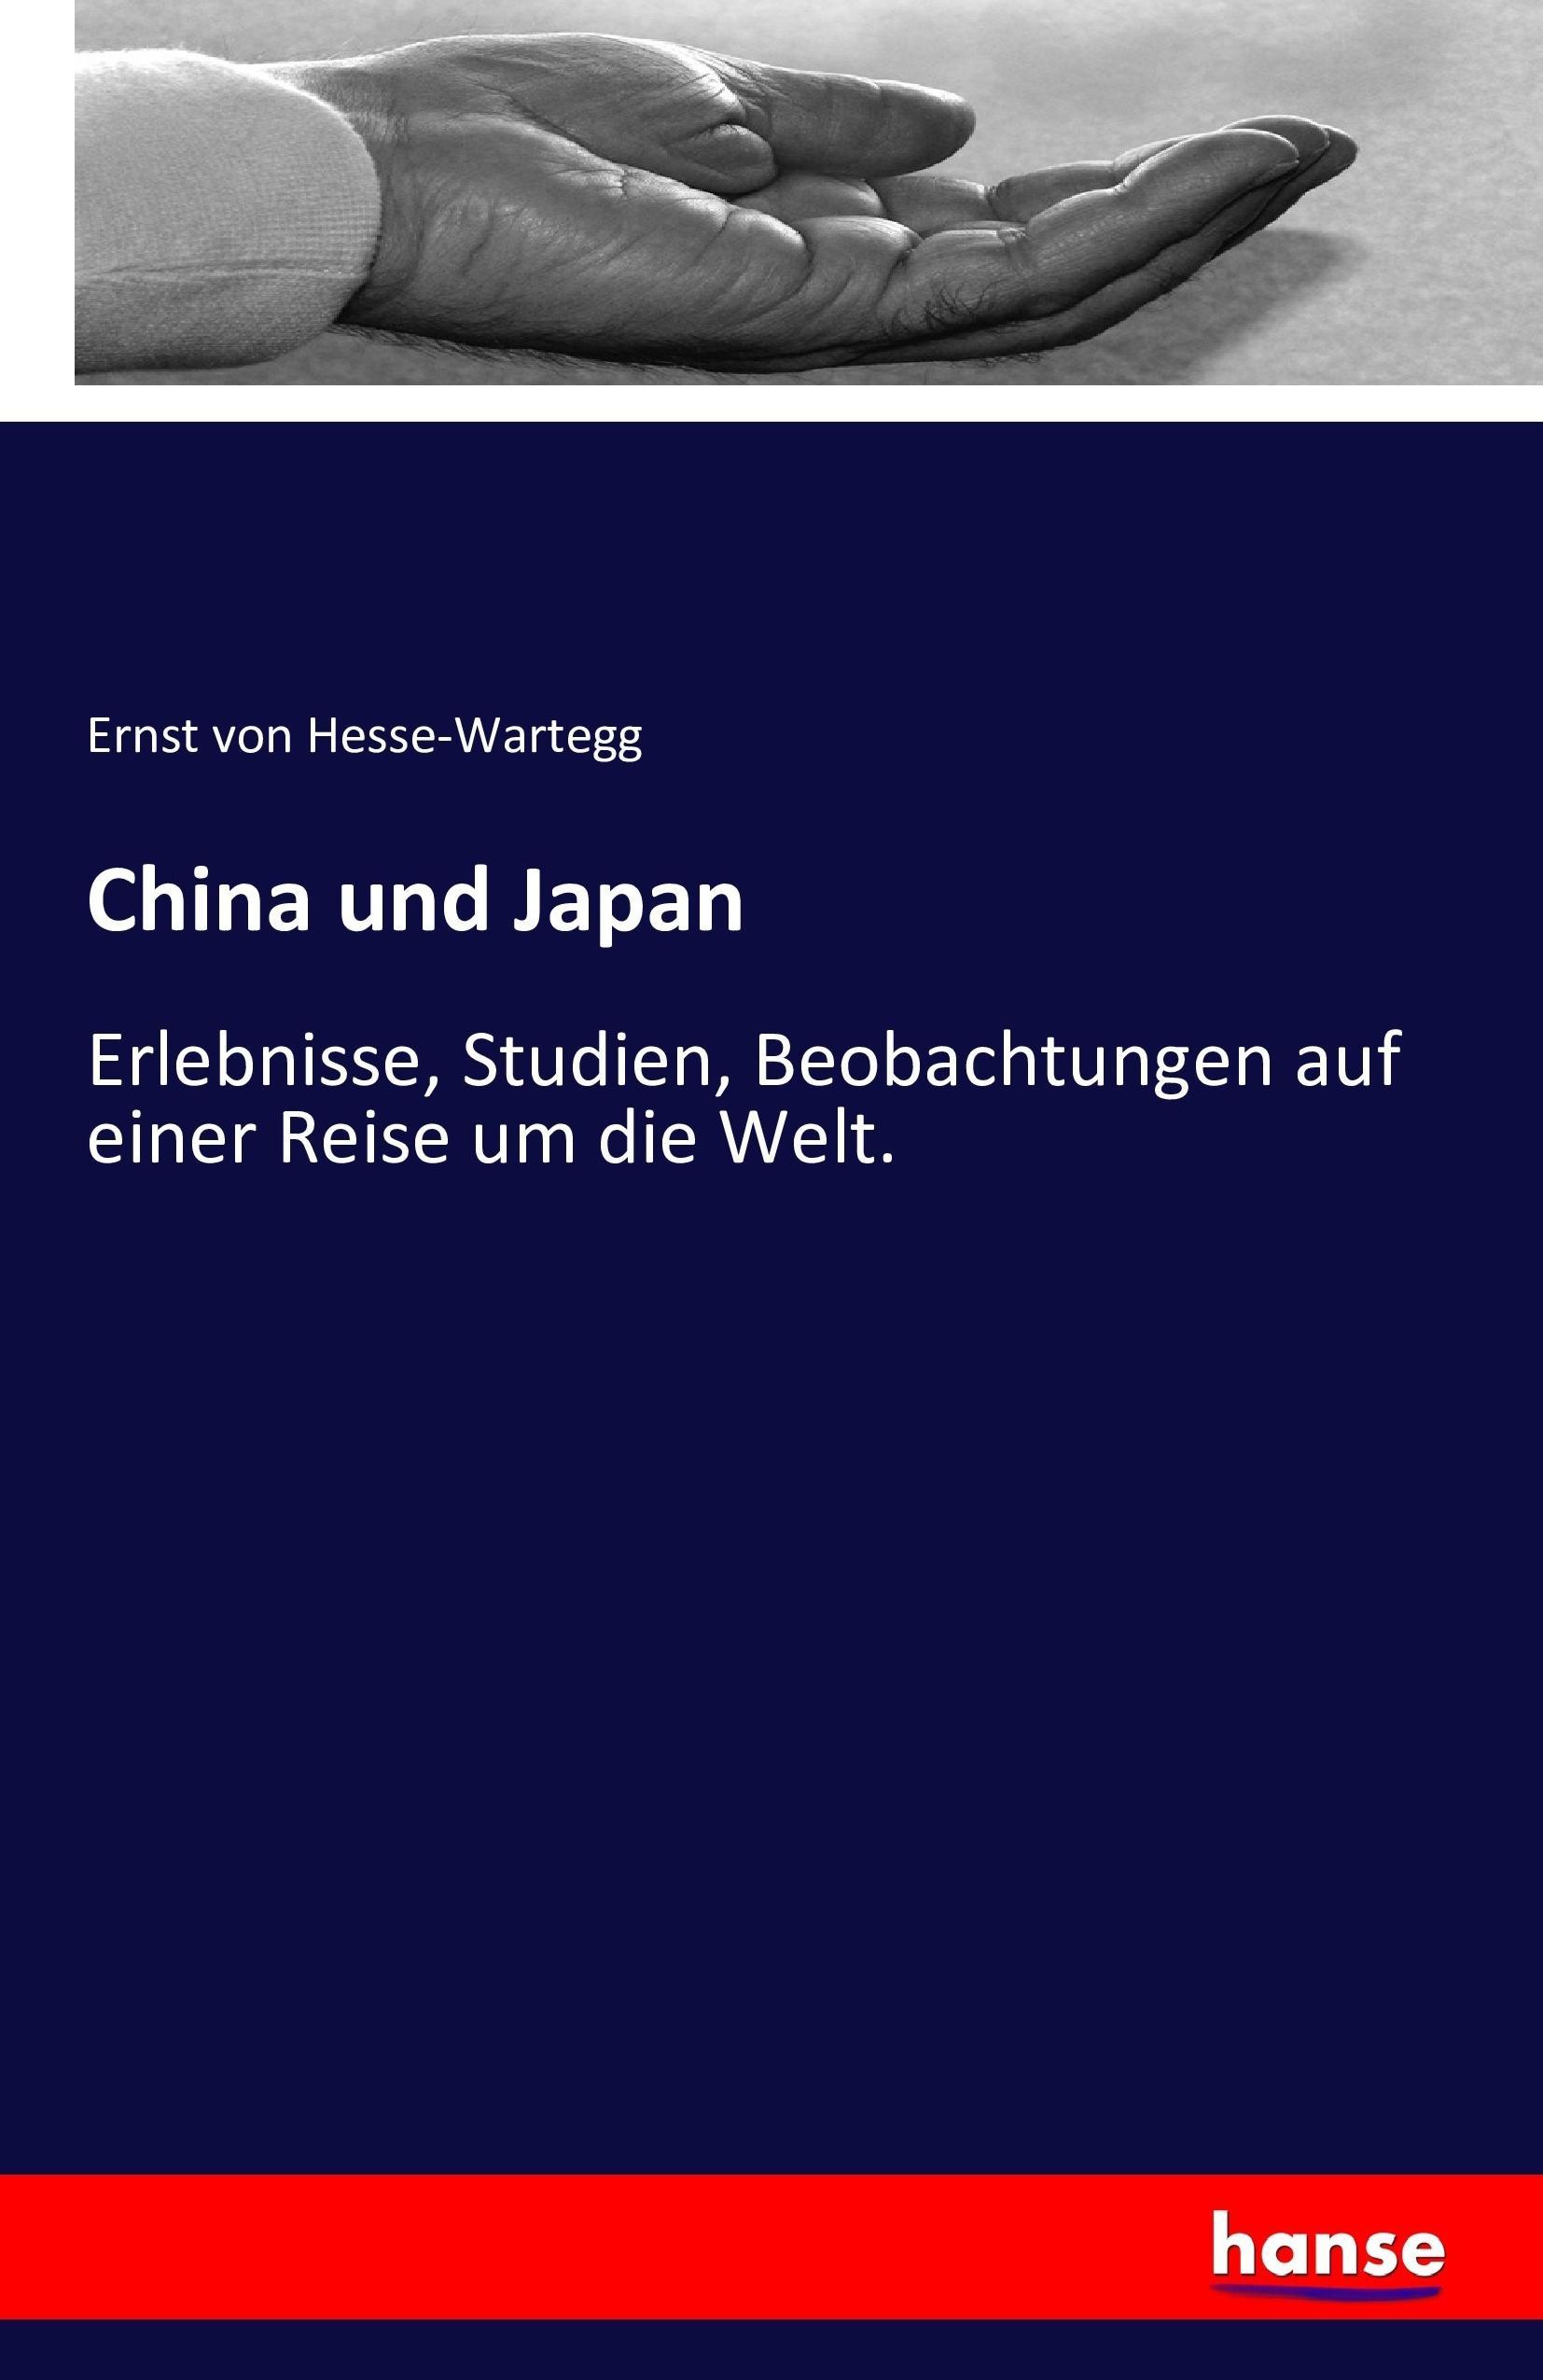 China und Japan - Hesse-Wartegg, Ernst von